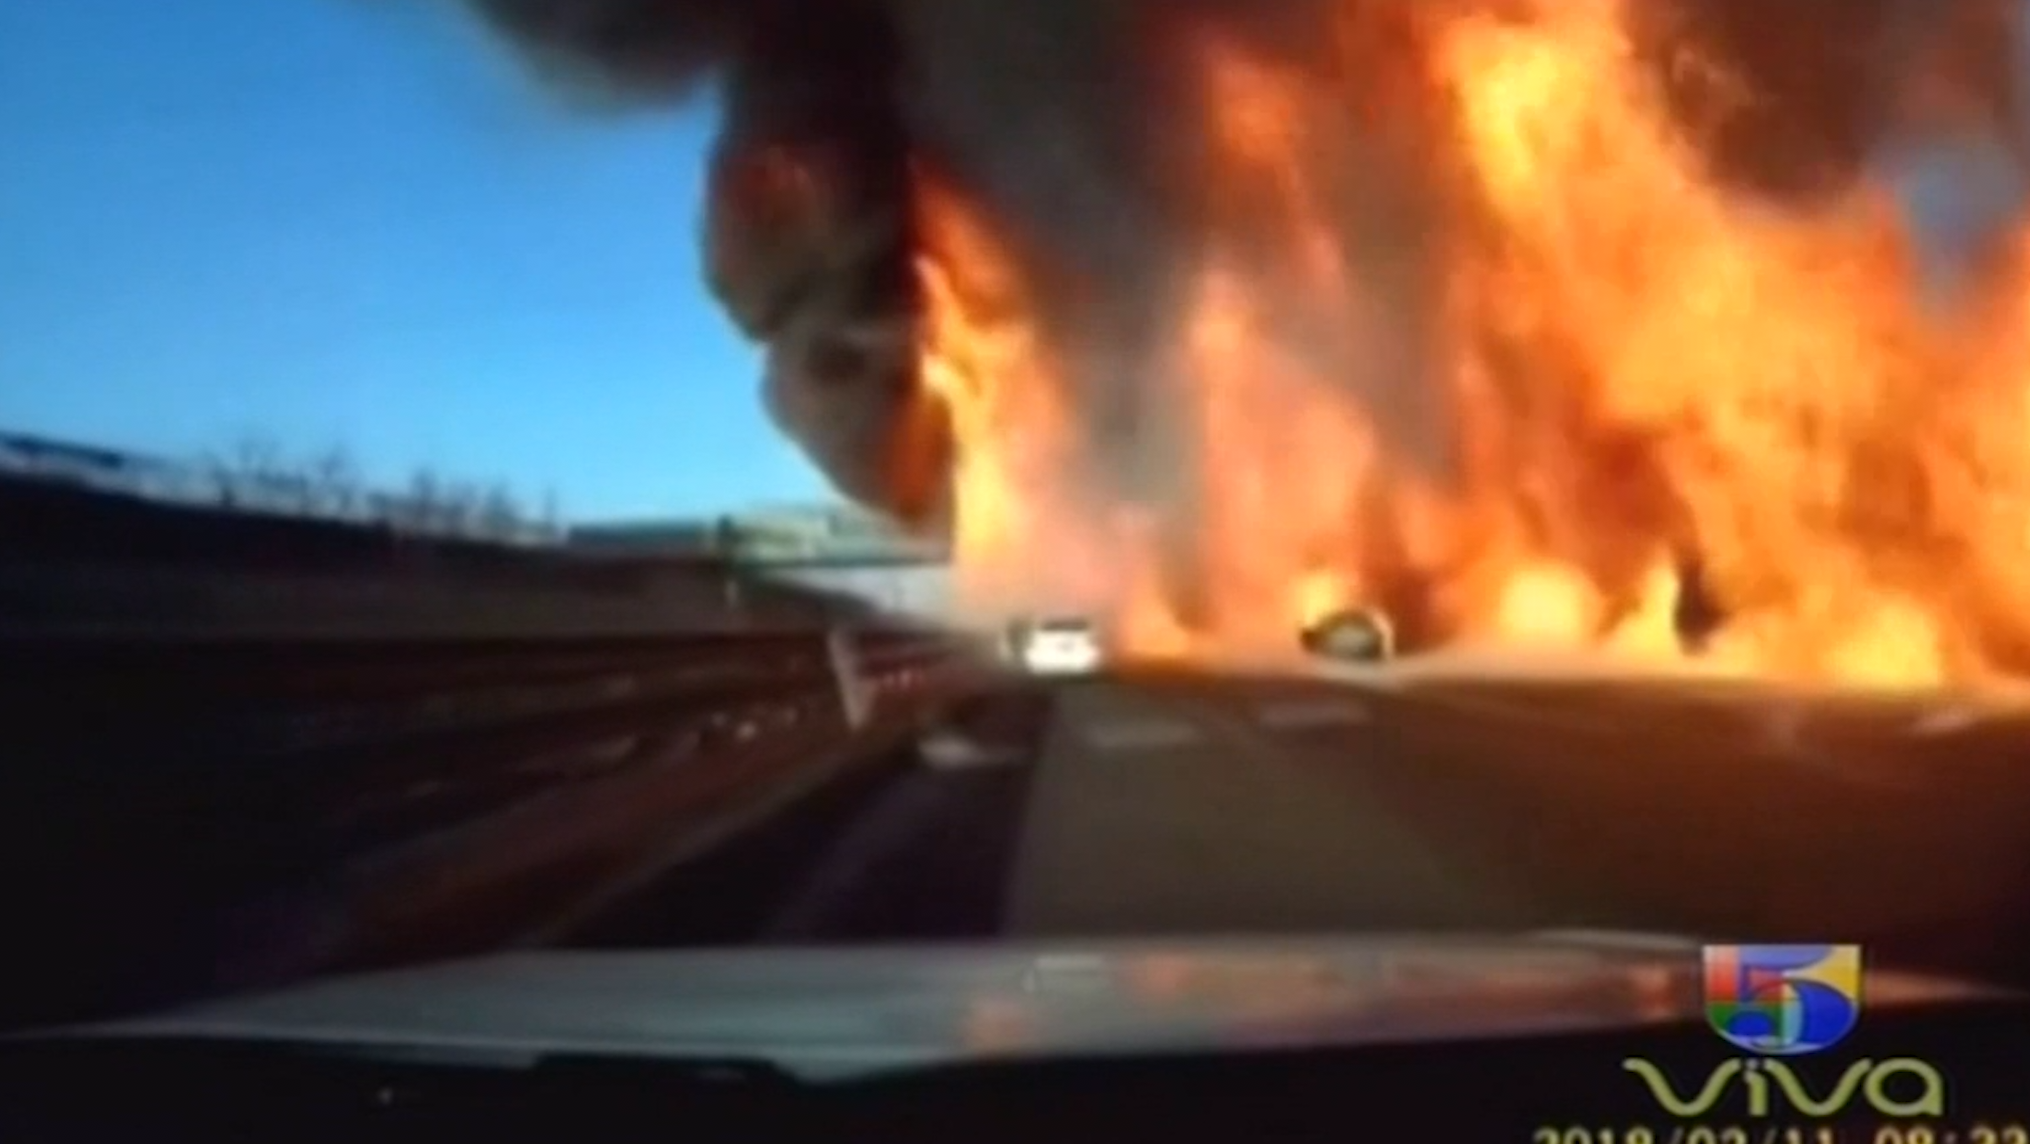 Increíble! Camión Volcado Se Incendia En Llama En Plena Carretera